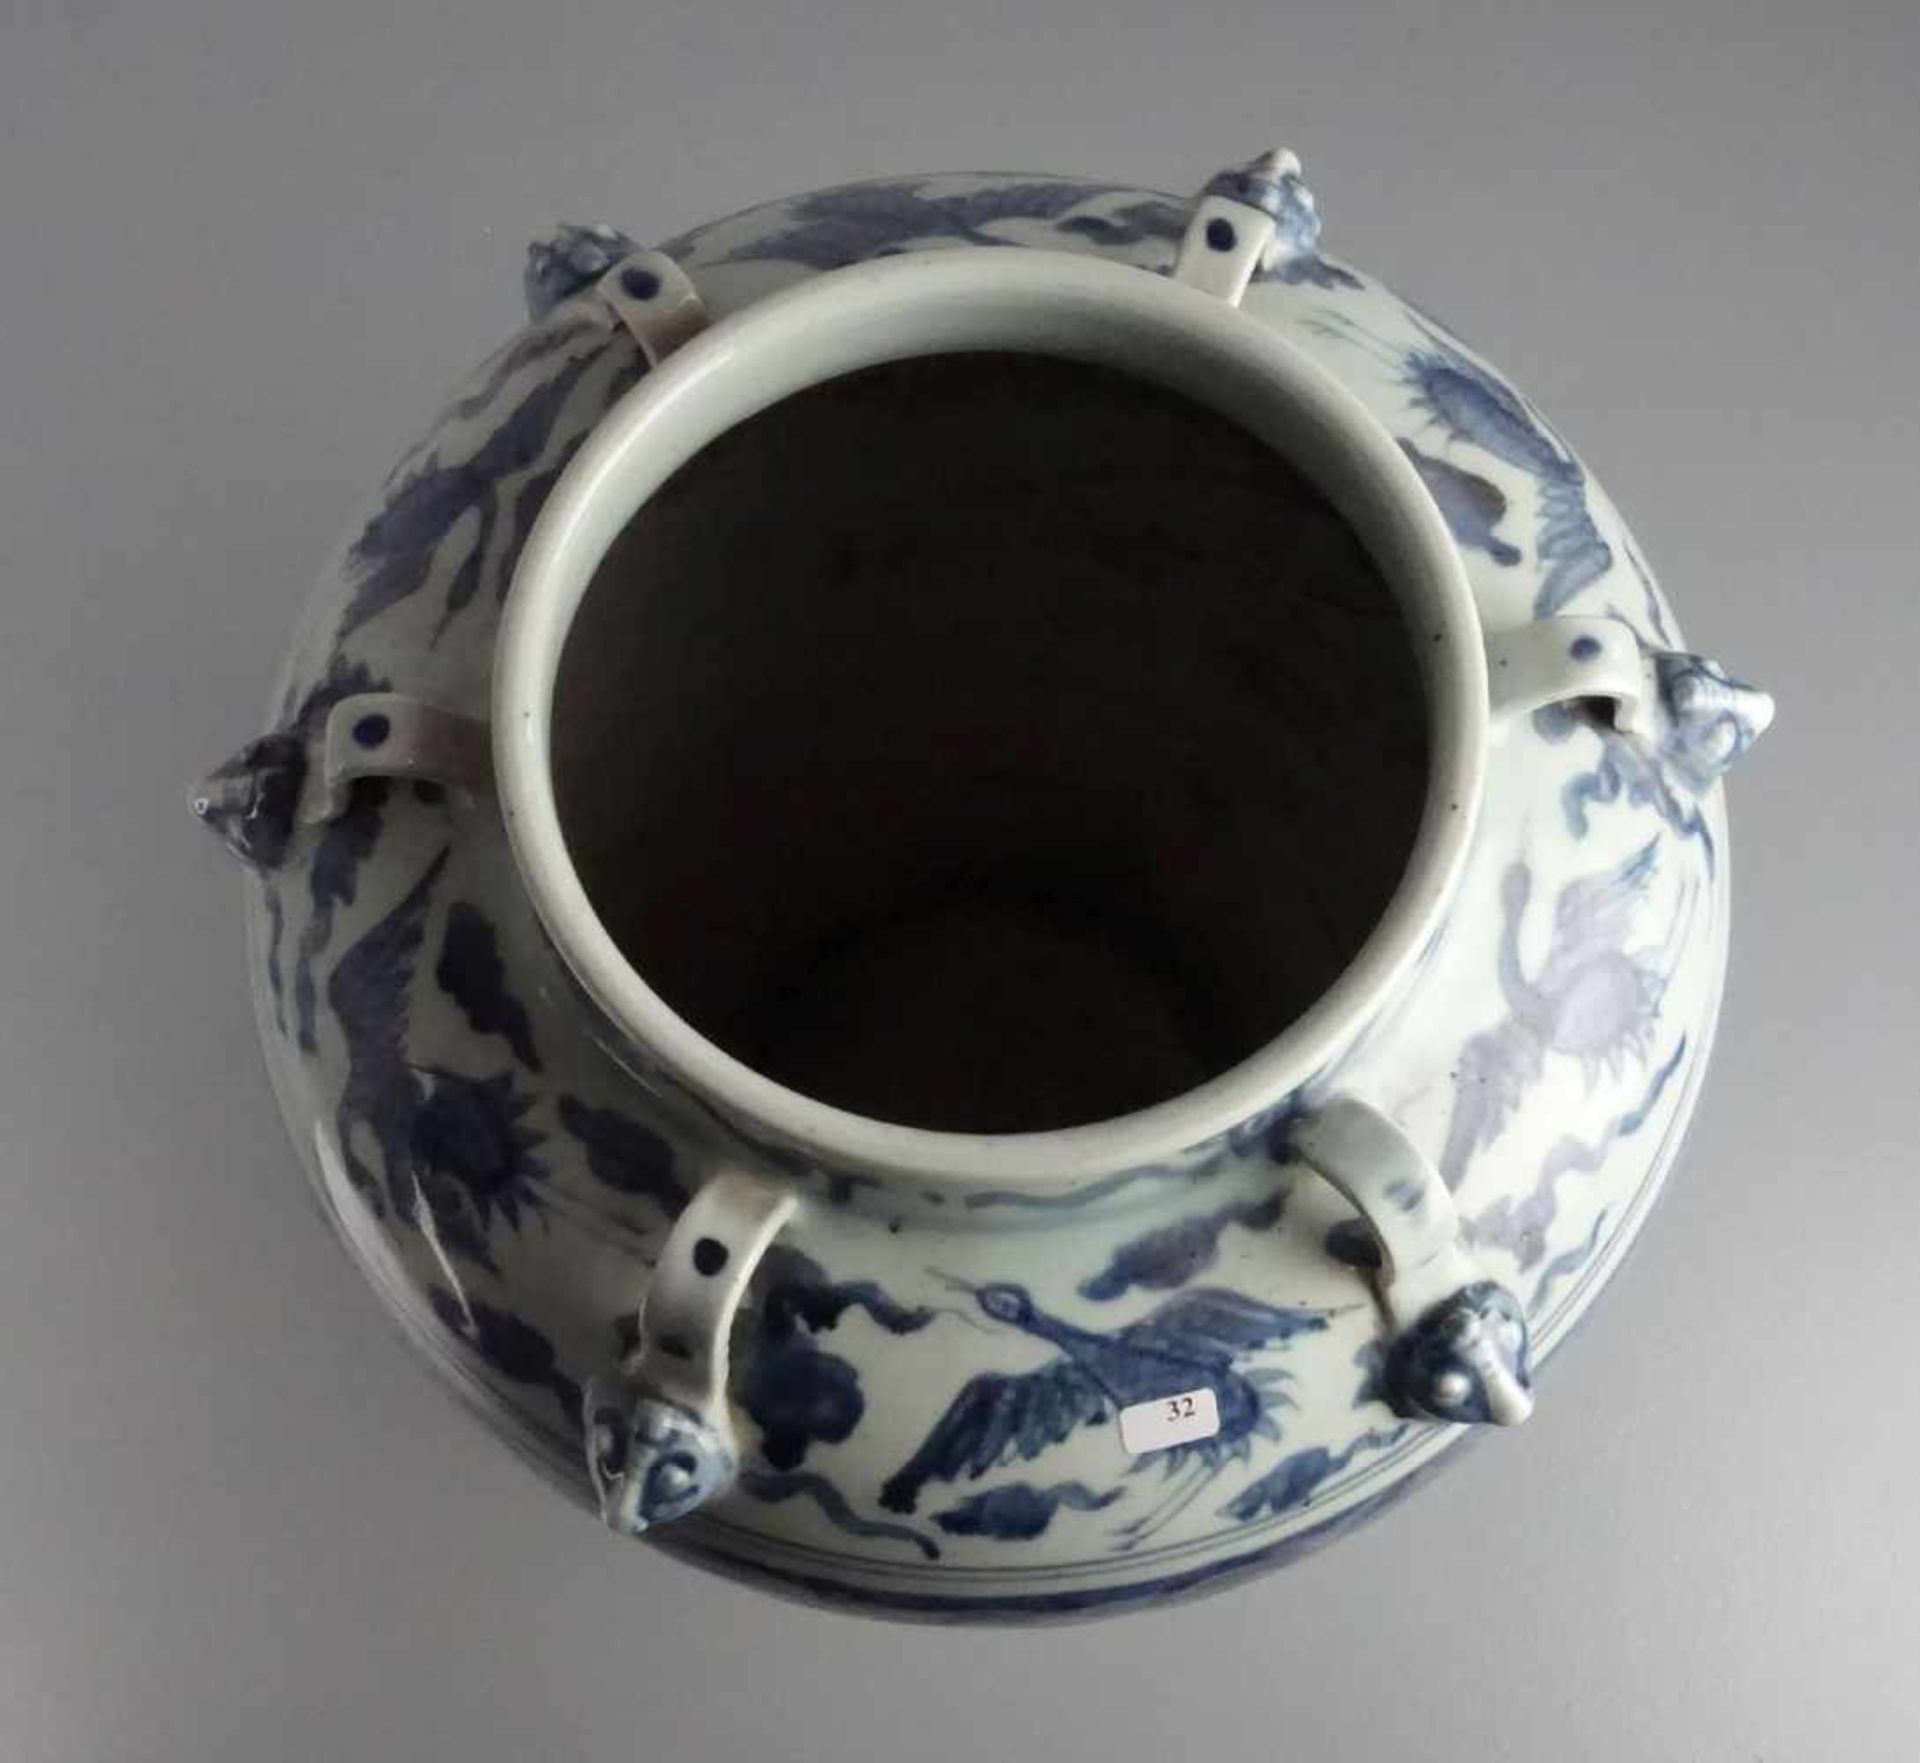 CHINESISCHE VASE, Porzellan (ungemarkt), späte Qing Dynastie / chinese vase, late Qing dynasty. - Bild 2 aus 3